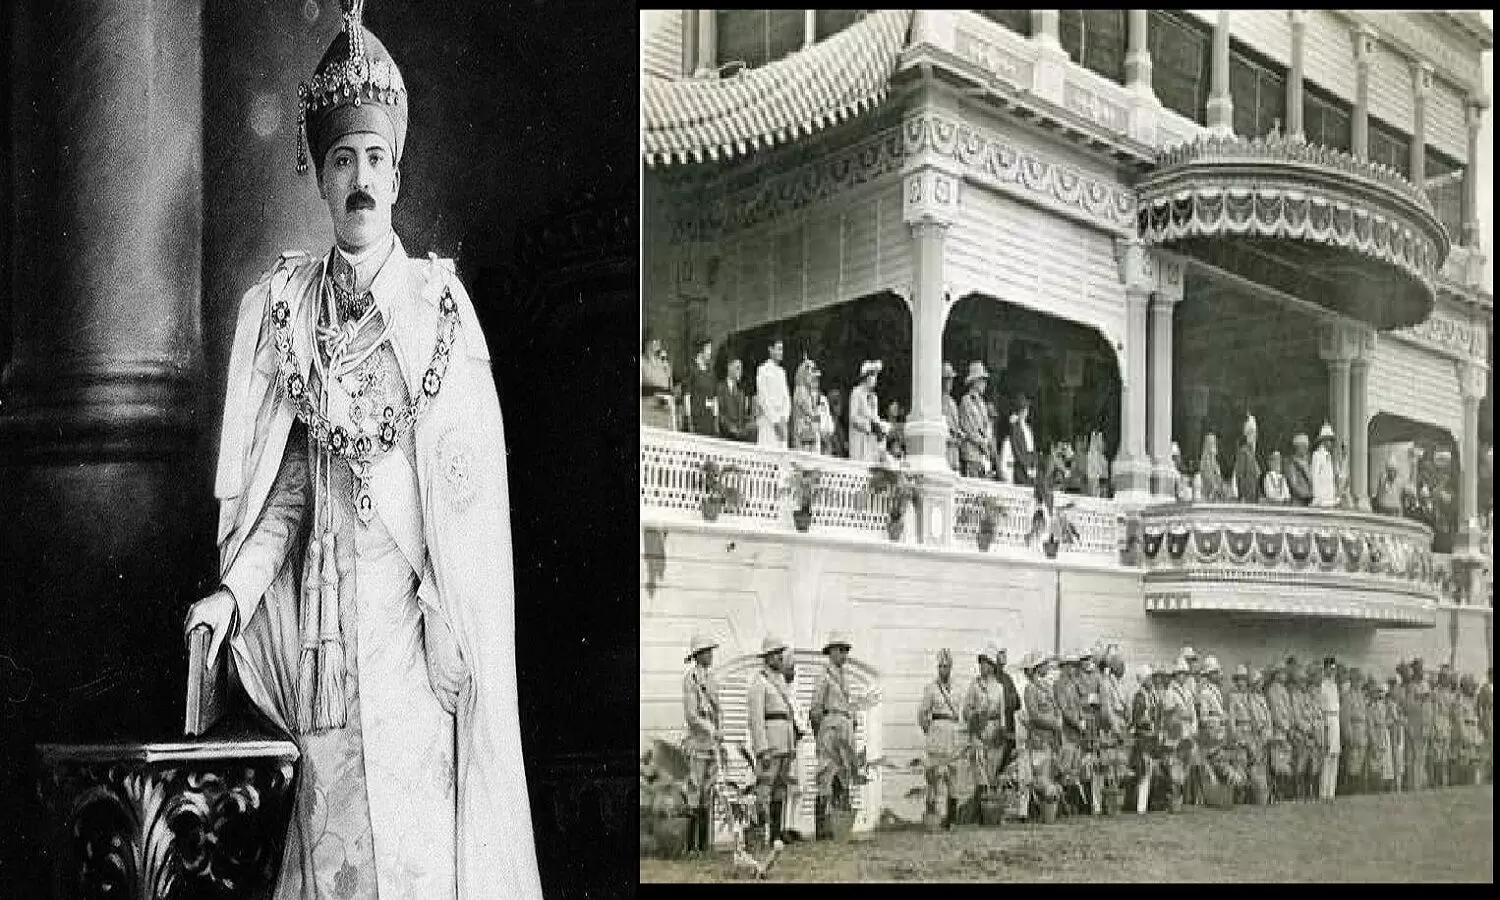 Richest King Of India: Mir Osman Ali Khan थे भारत के सबसे बड़े धनवान राजा, मीर उस्मान के पास कितनी दौलत थी